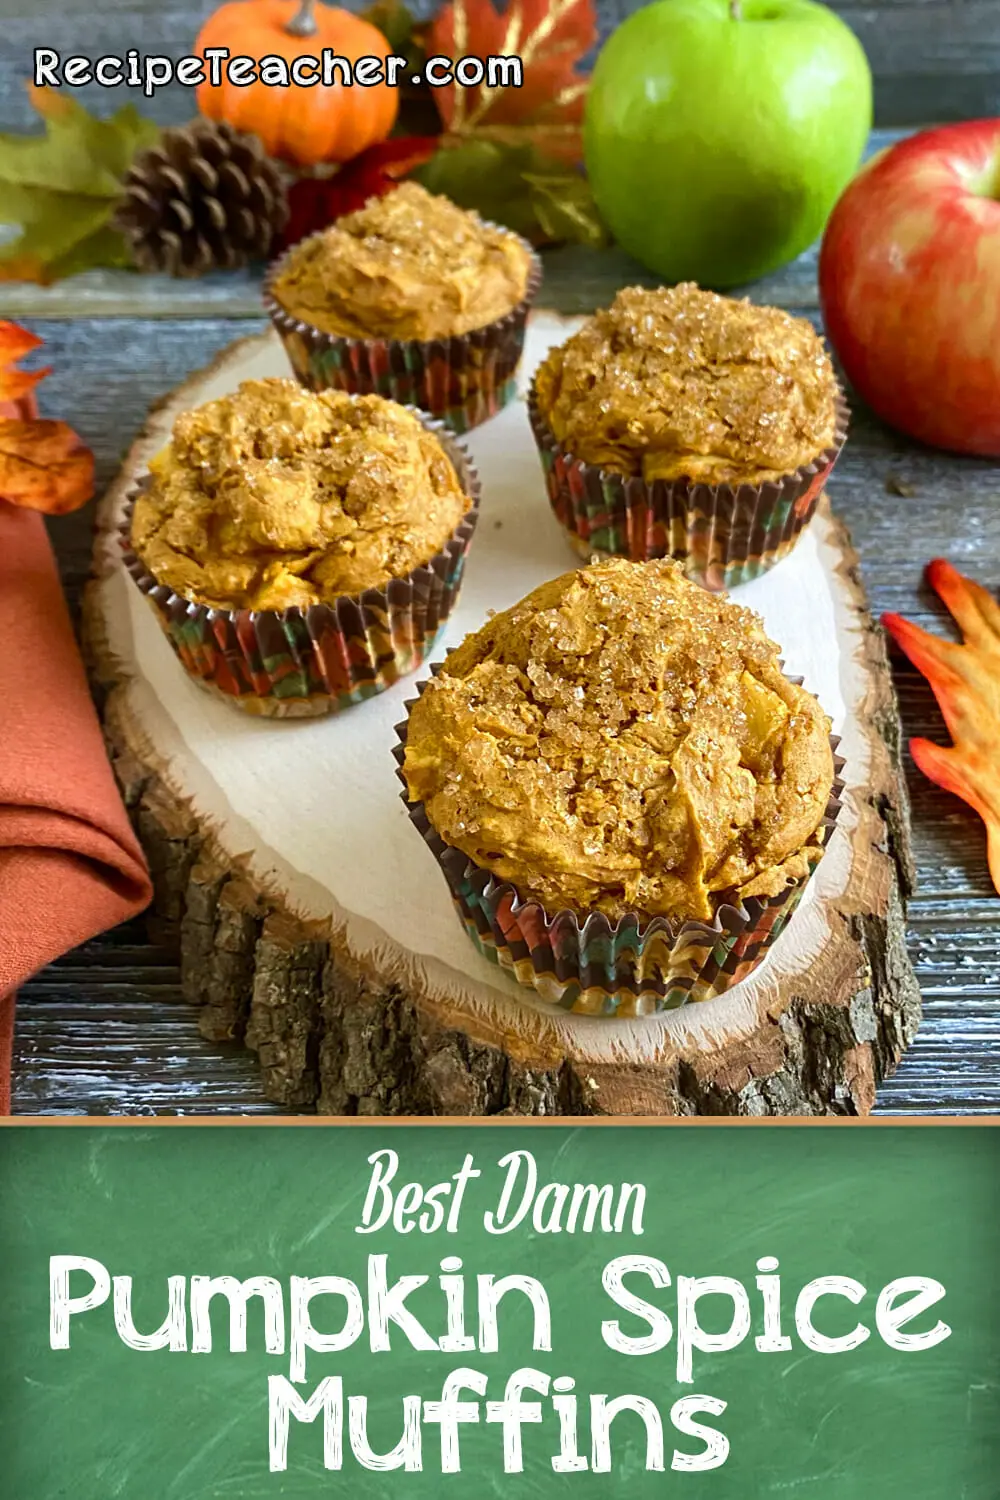 Recipe for pumpkin spice muffins